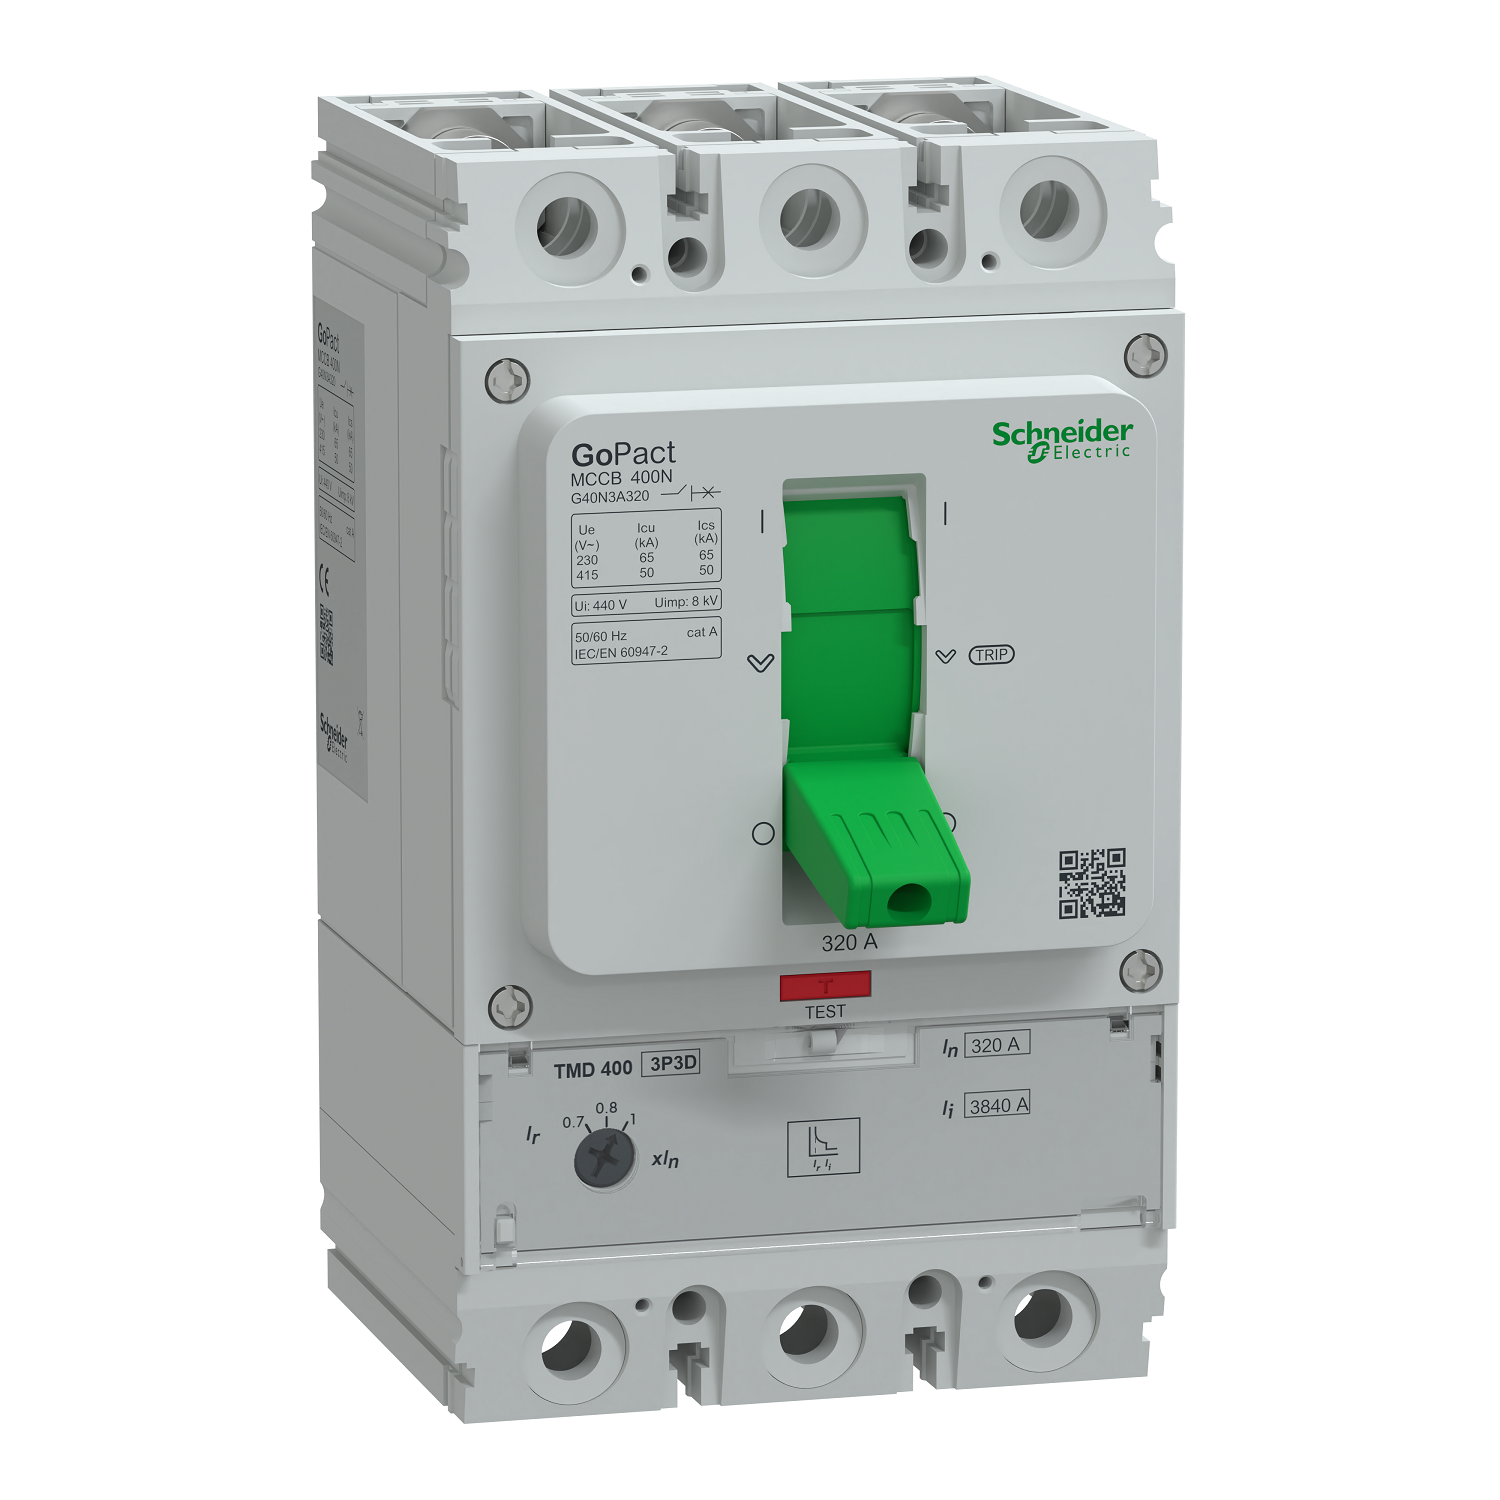 Circuit breaker, GoPact MCCB 400, 3 poles, 50kA at 415VAC, 320A rating, TMD trip unit, adjustable thermal protection